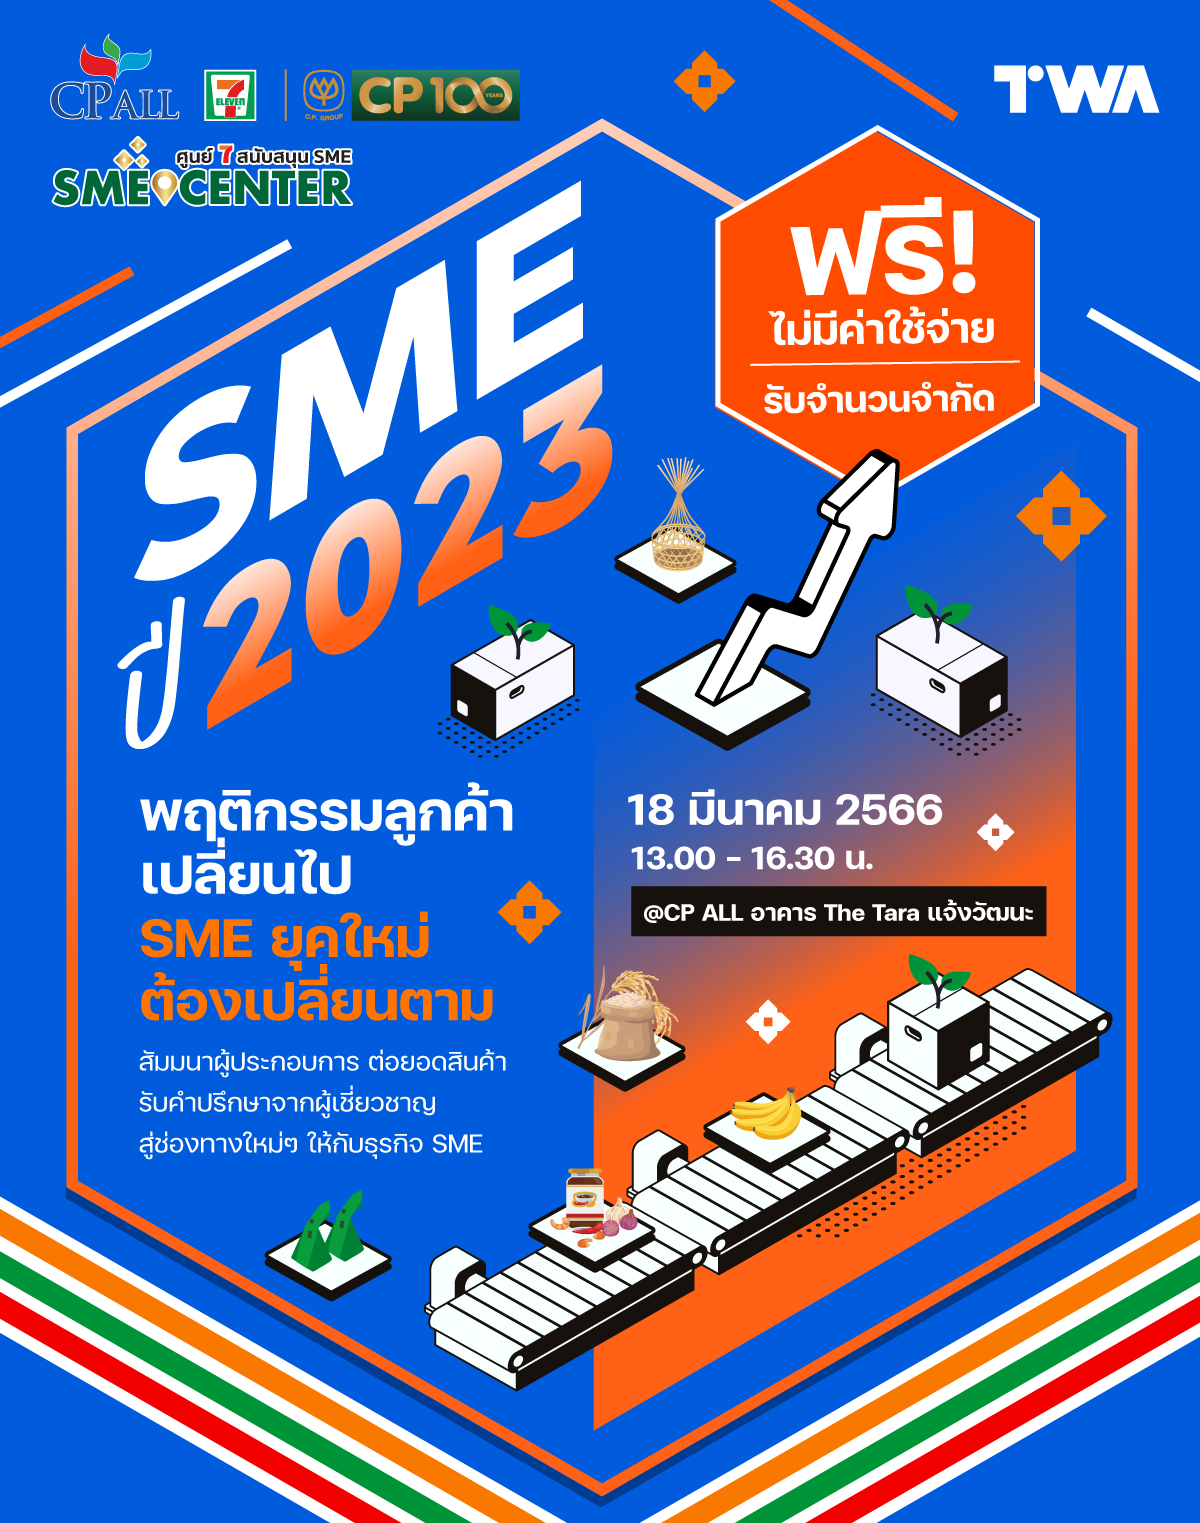 Cover Image for SME ปี 2023 พฤติกรรมลูกค้าเปลี่ยนไป SME ยุคใหม่ต้องเปลี่ยนตาม